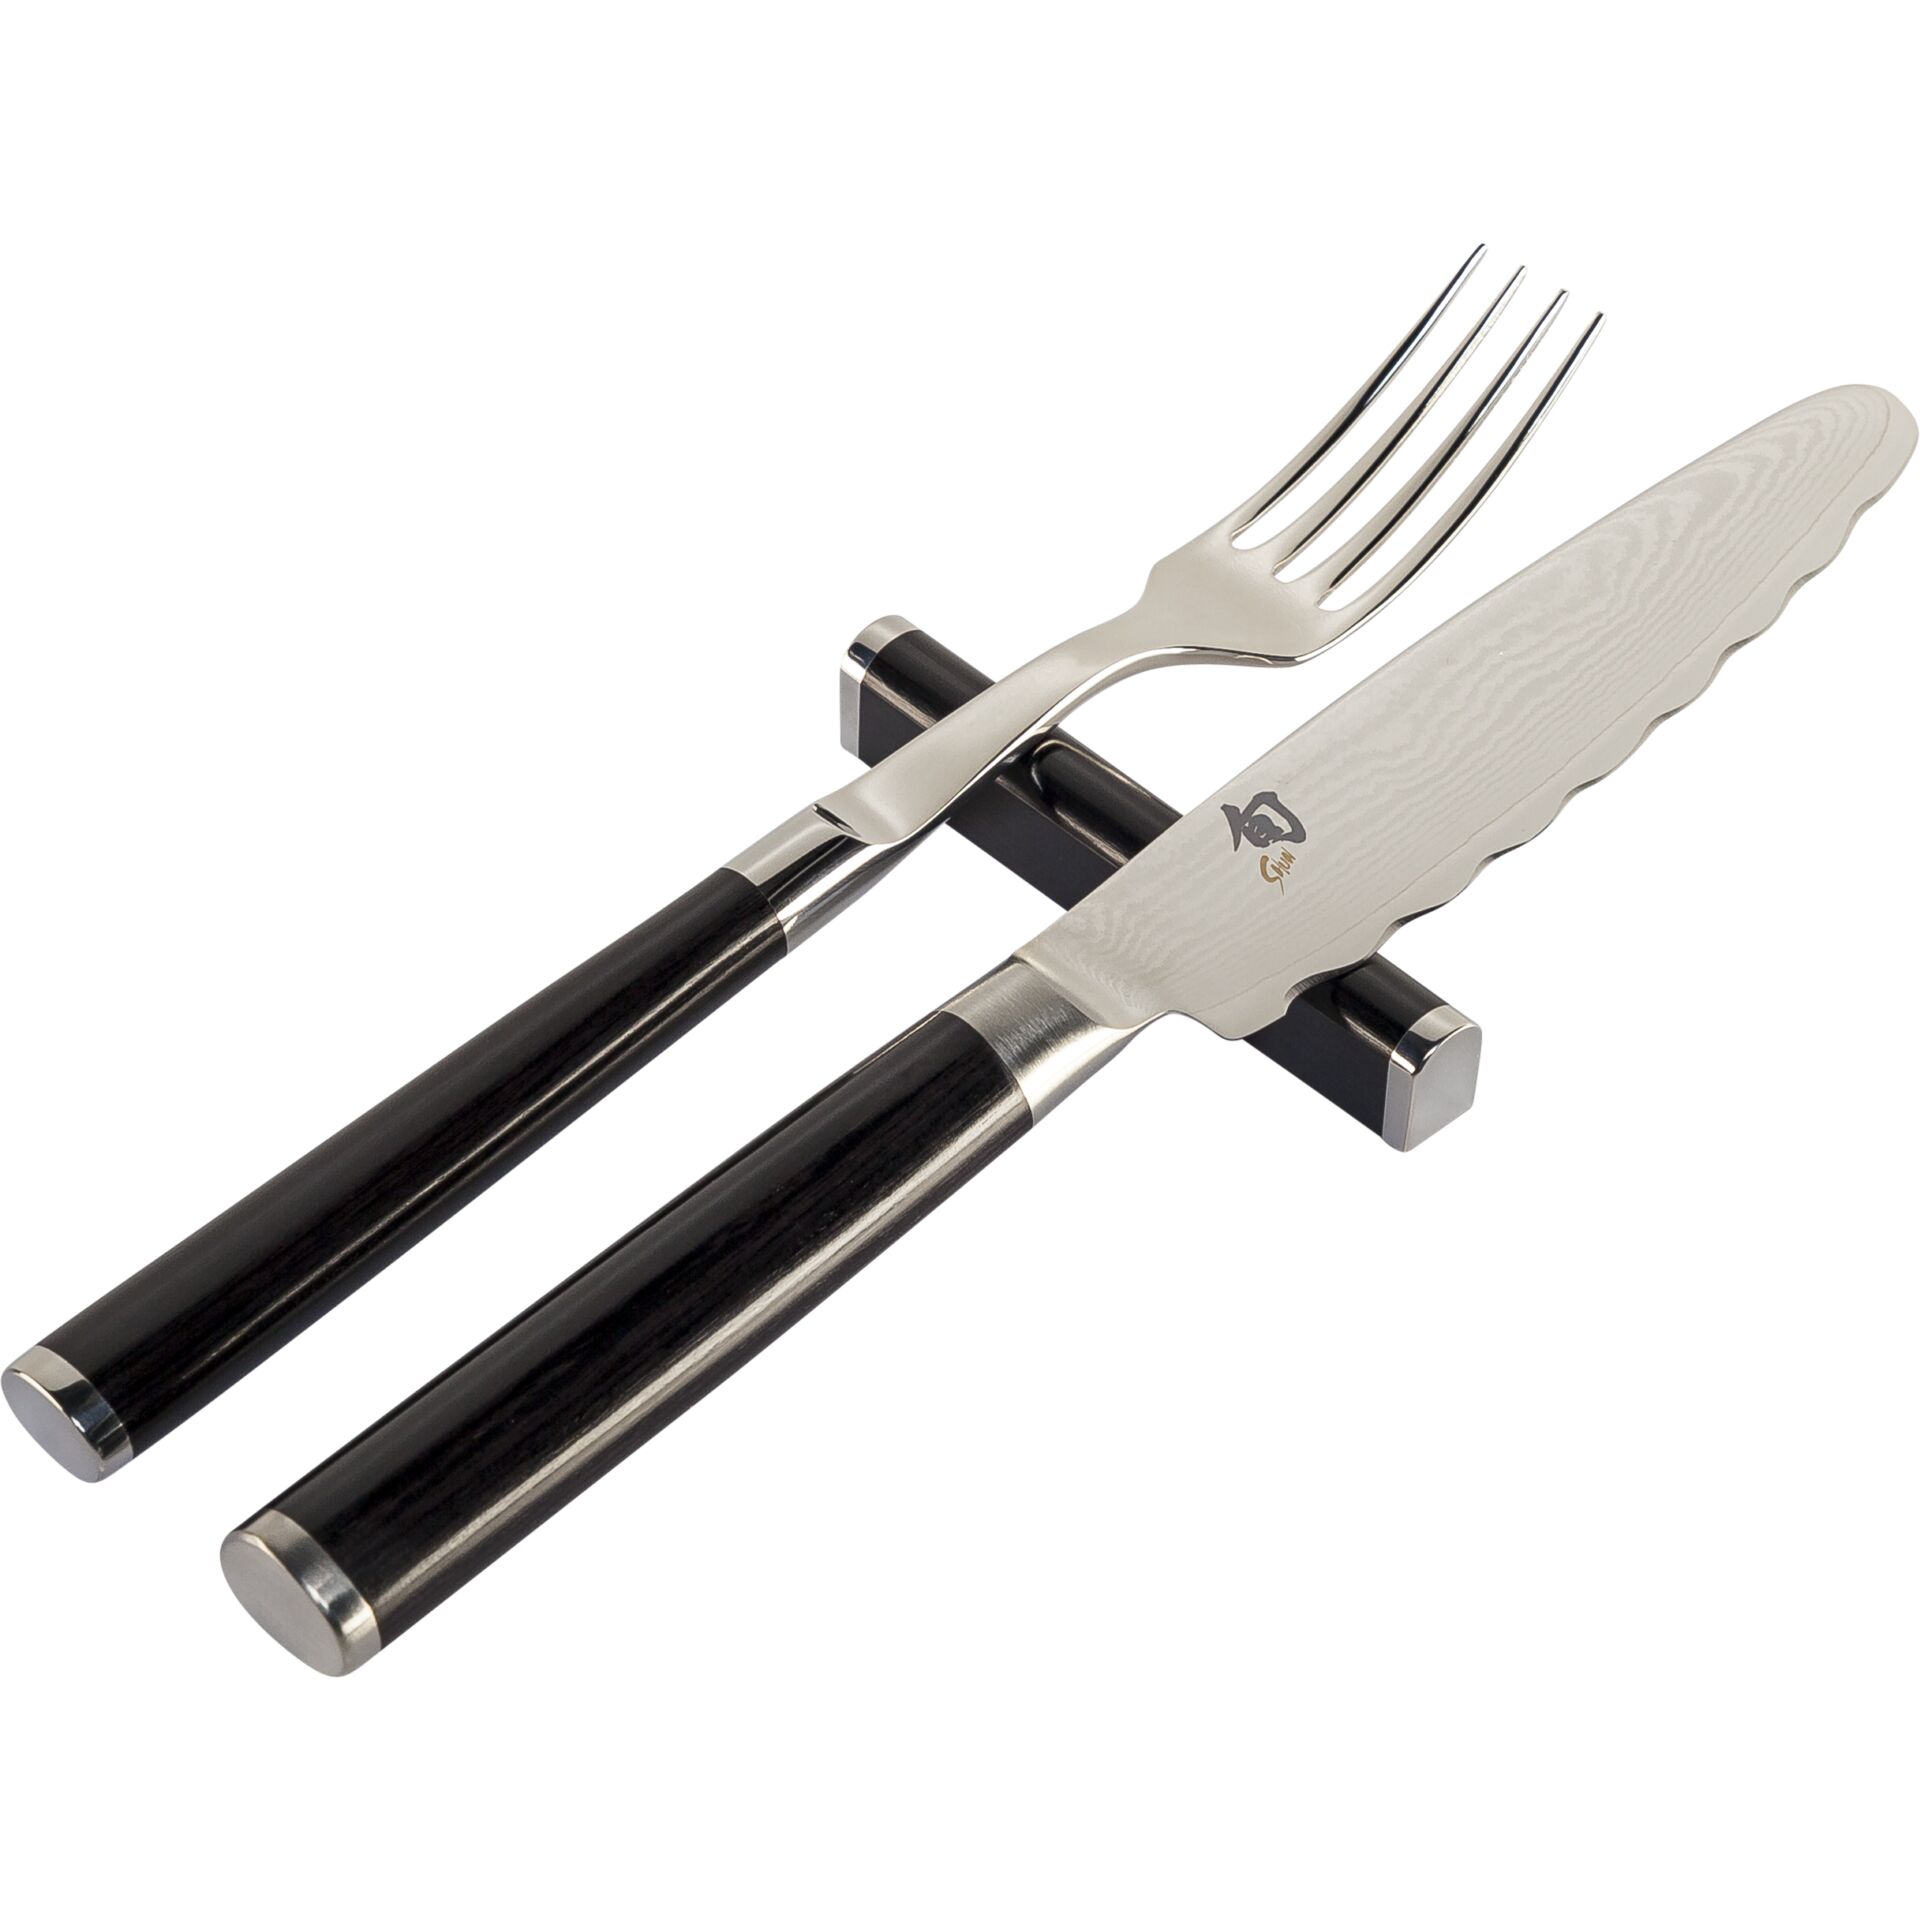 KAI Shun Cutlery  3-pcs Fork, Knife, Knife Rest